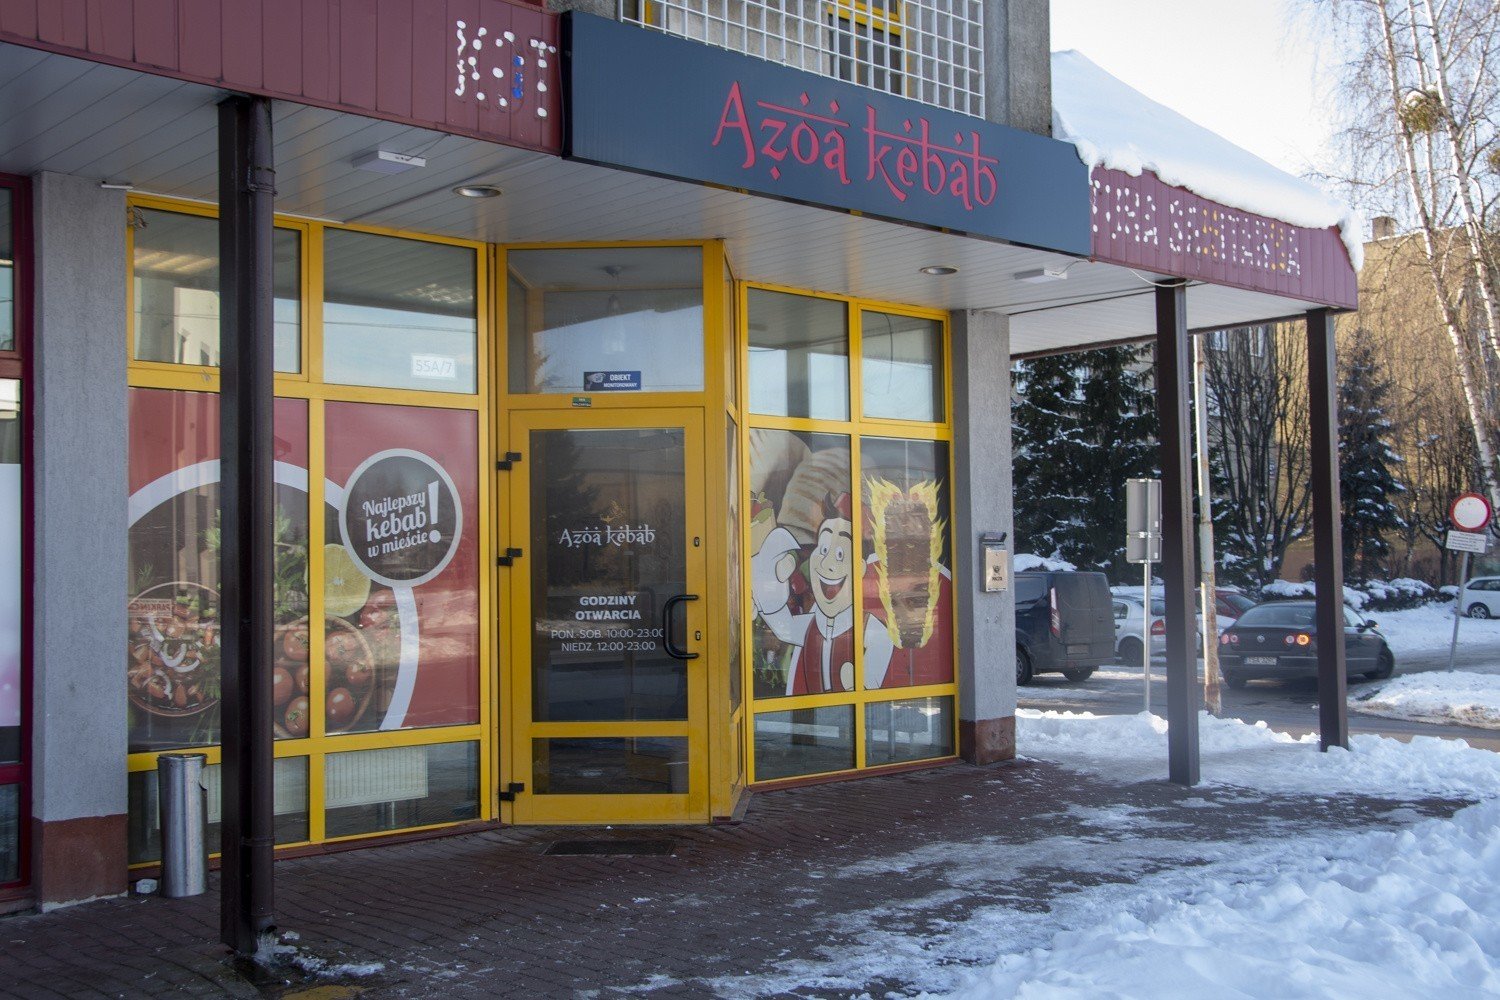 W Sandomierzu działa Azoa kebab. Zjemy tu smacznie i szybko [ZDJĘCIA] |  Sandomierz Nasze Miasto